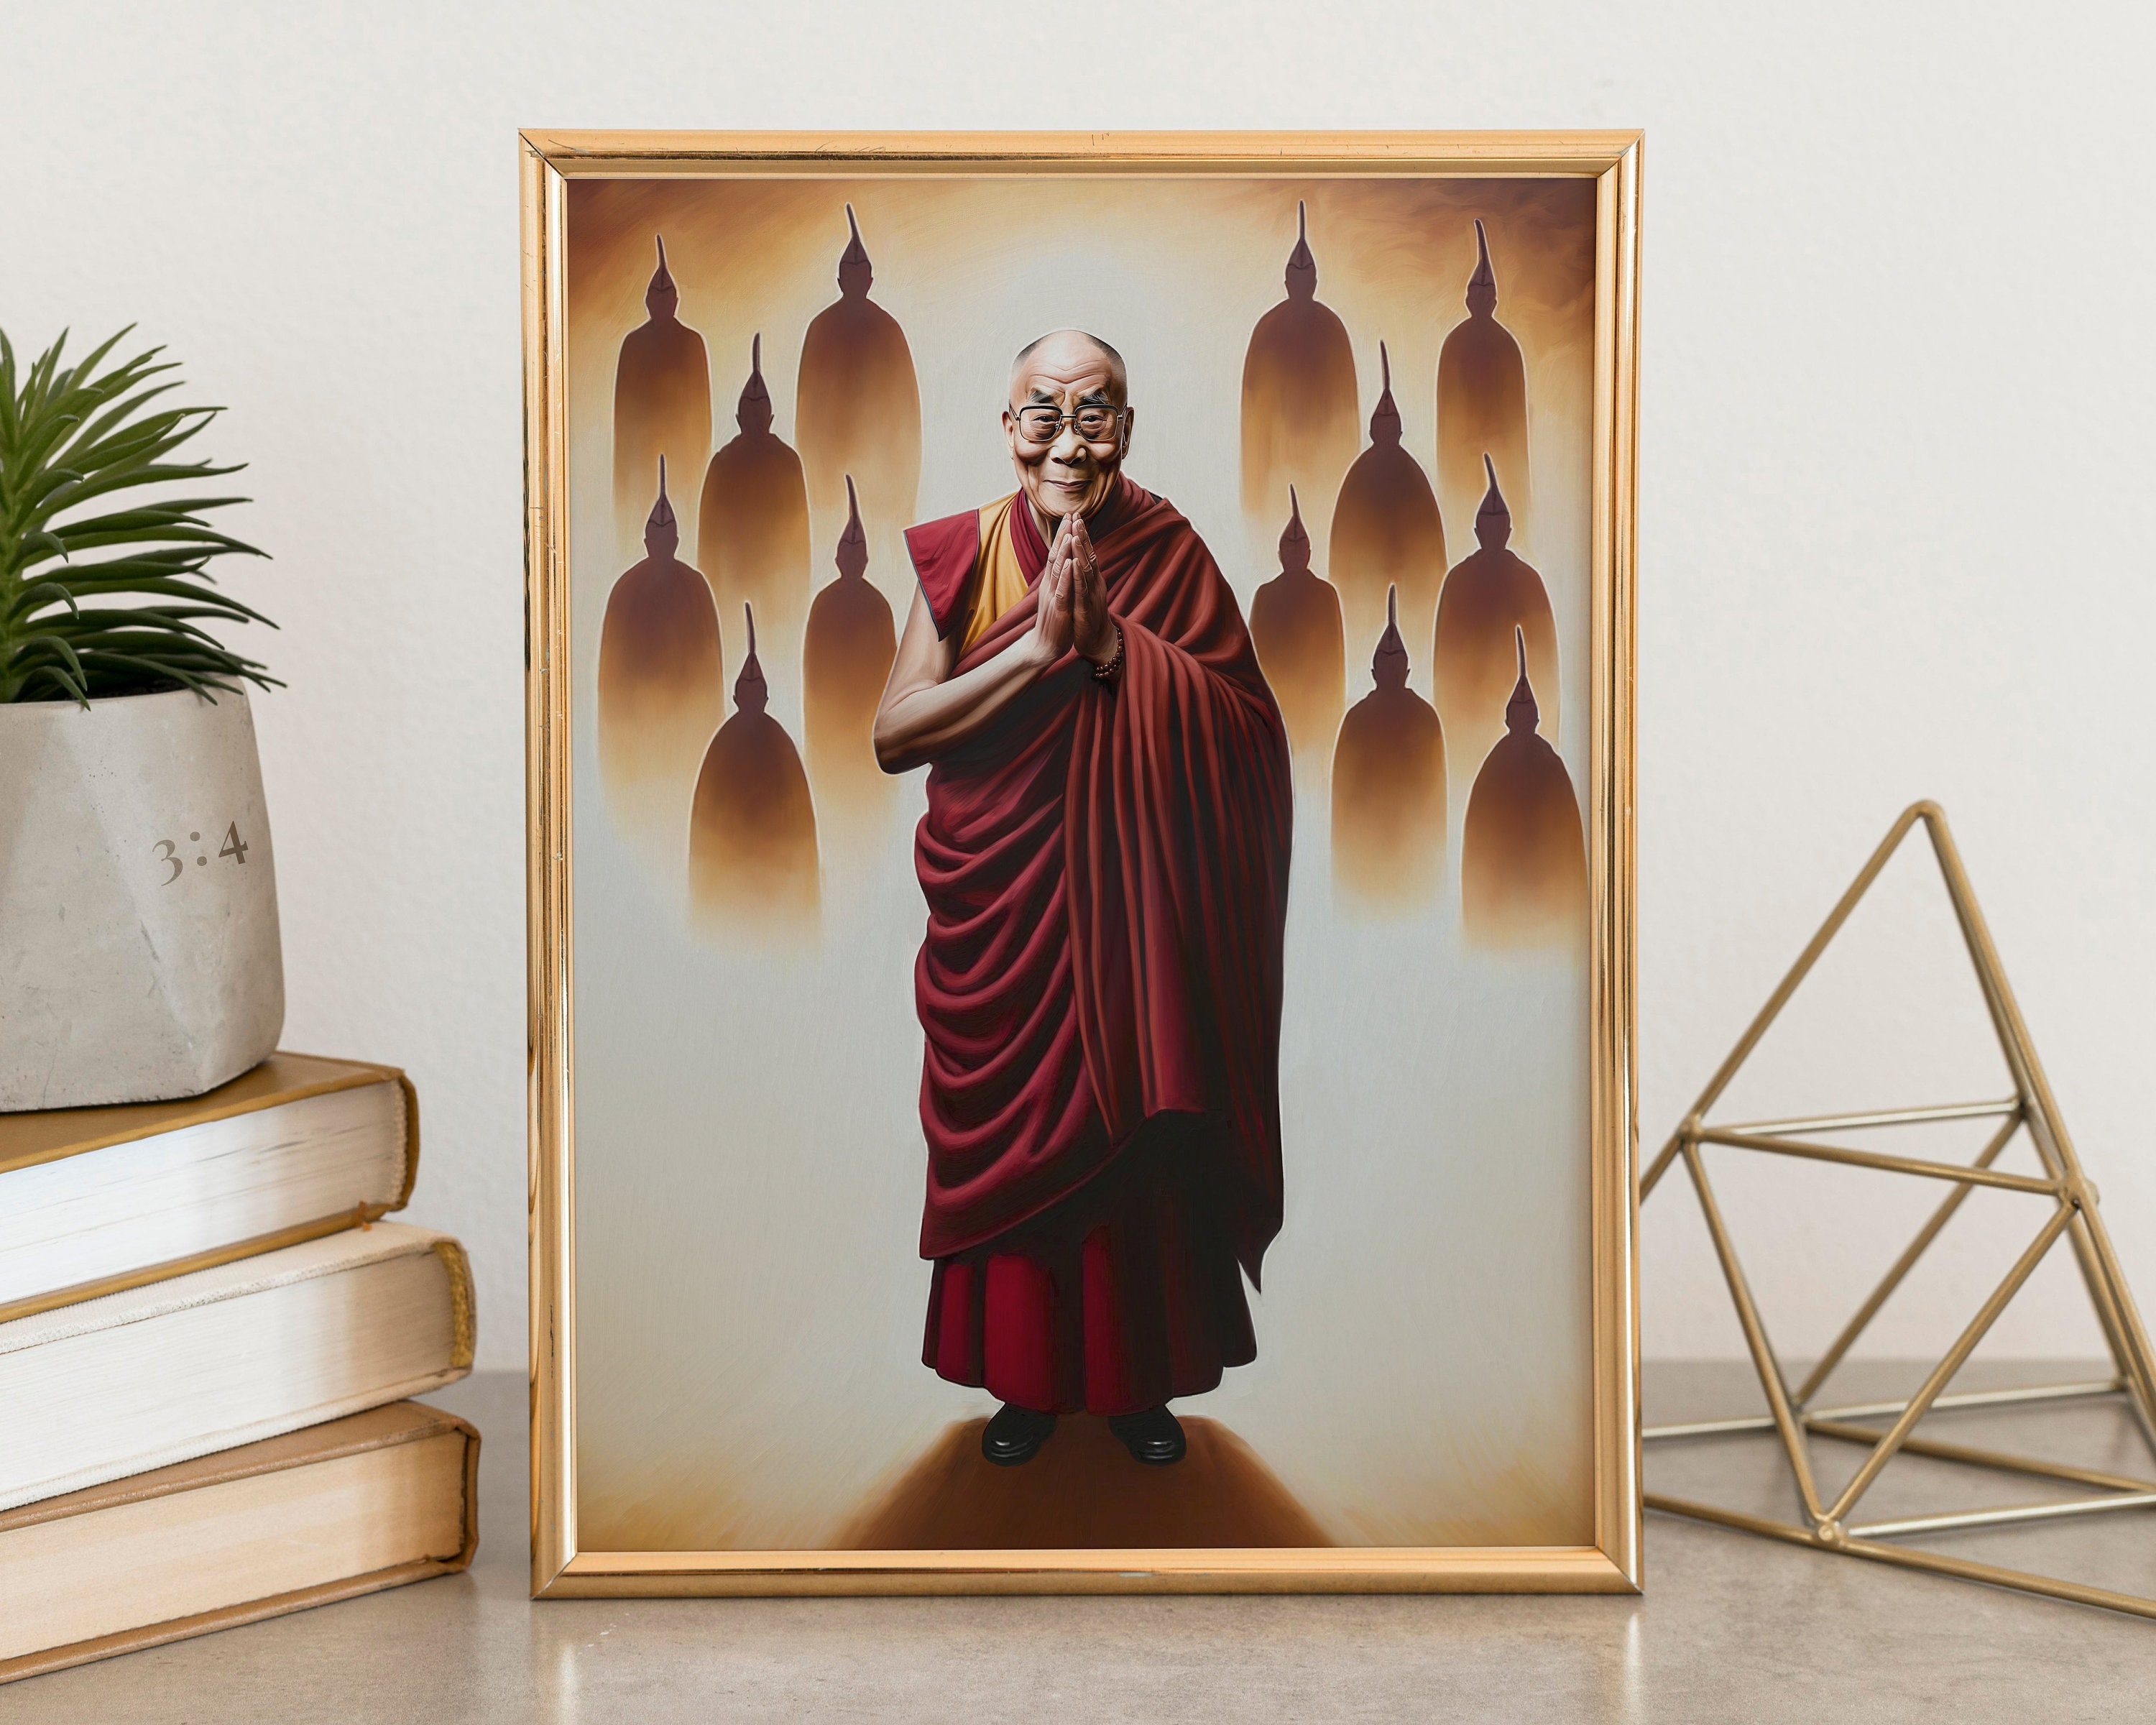 The Dale Llama Pitbull Dalai Lama Digital Art for Print 